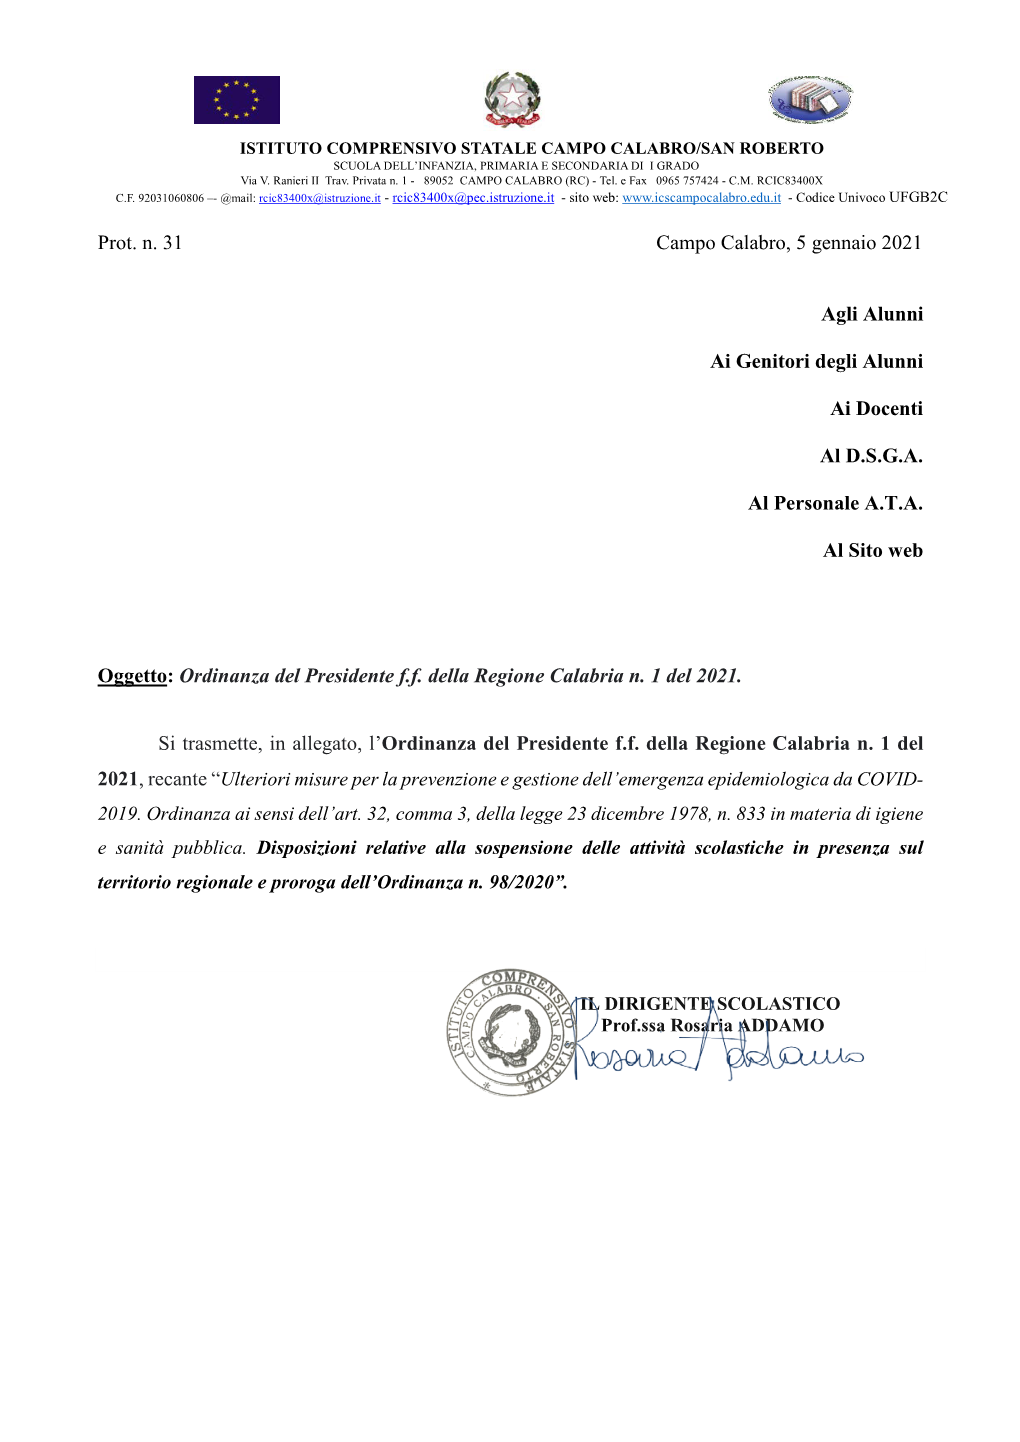 AVVISO Ordinanza Del Presidente Della Regione Calabria – N.1 Del 2021